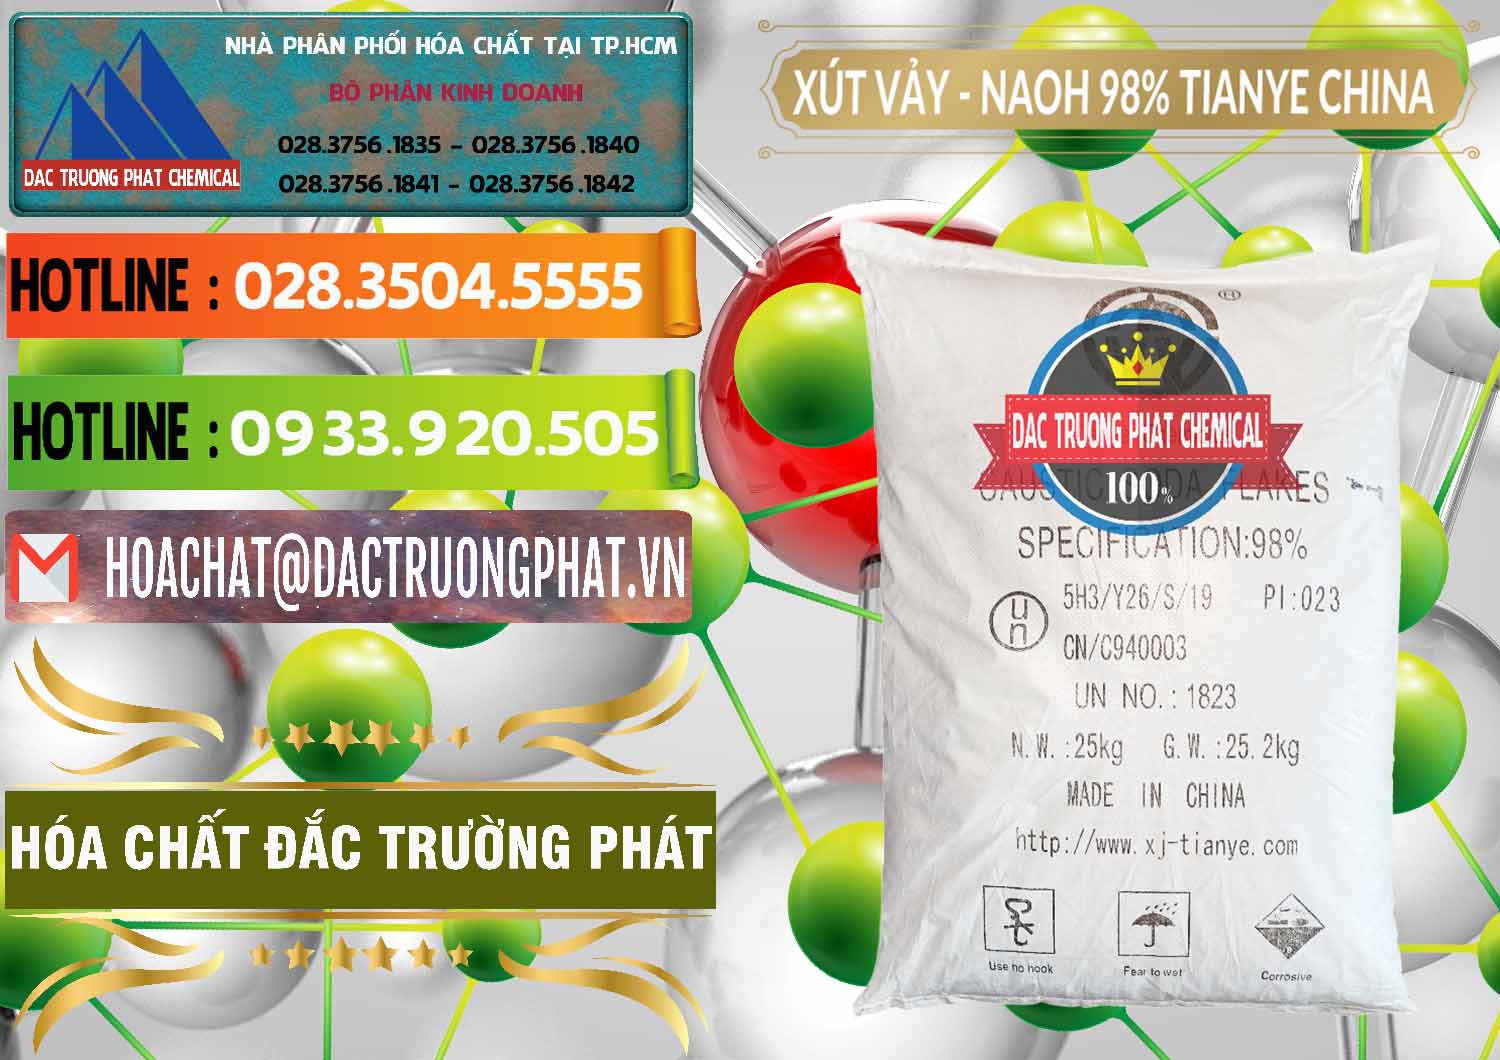 Cty chuyên phân phối ( bán ) Xút Vảy - NaOH Vảy 98% Tianye Trung Quốc China - 0177 - Cty chuyên cung cấp và kinh doanh hóa chất tại TP.HCM - cungcaphoachat.com.vn